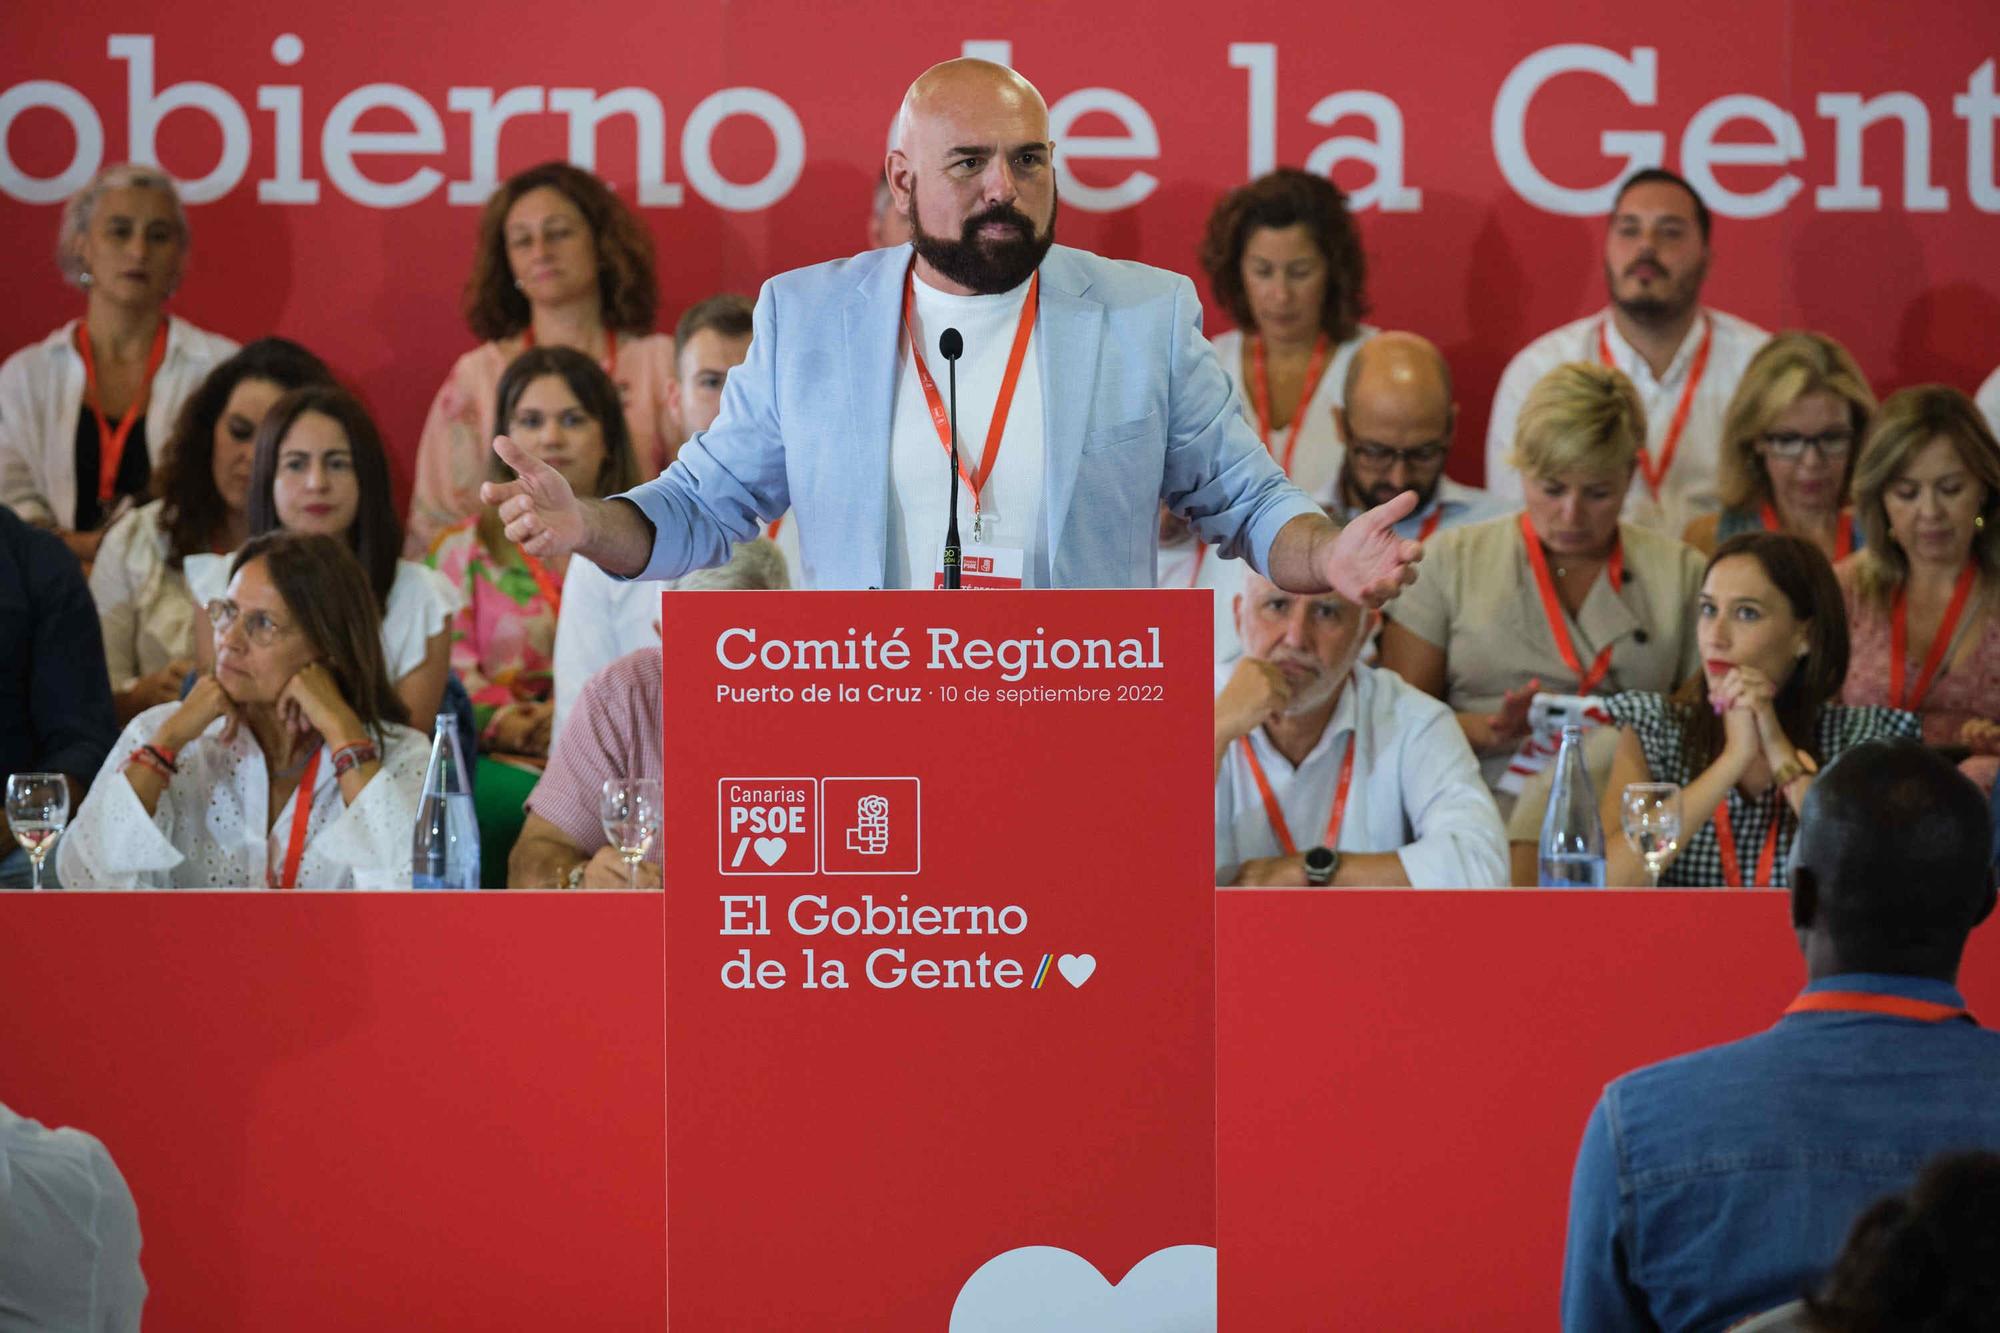 Comité Regional del PSOE celebrado en Puerto de la Cruz (Tenerife)